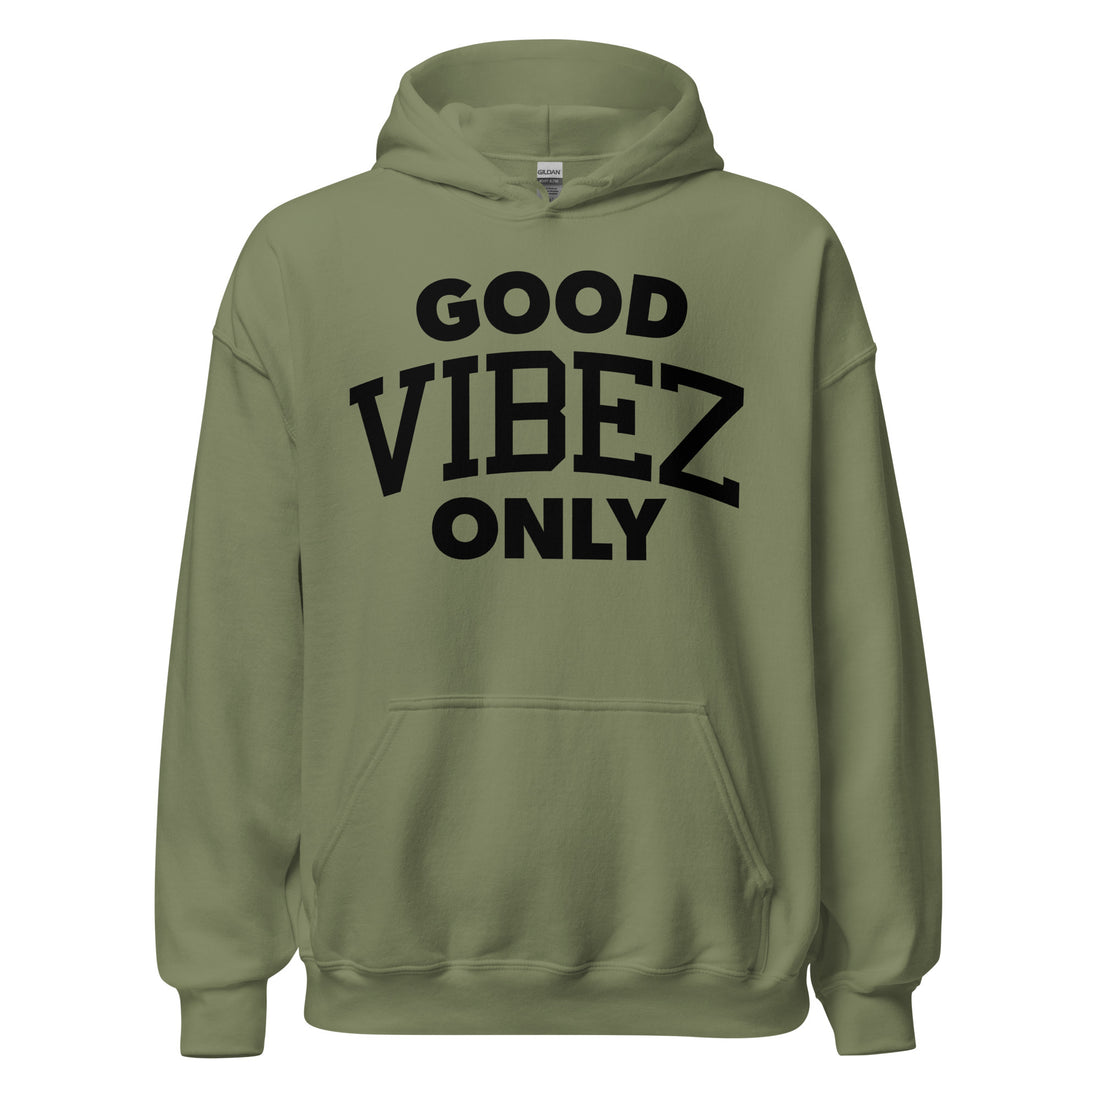 Good Vibez Only